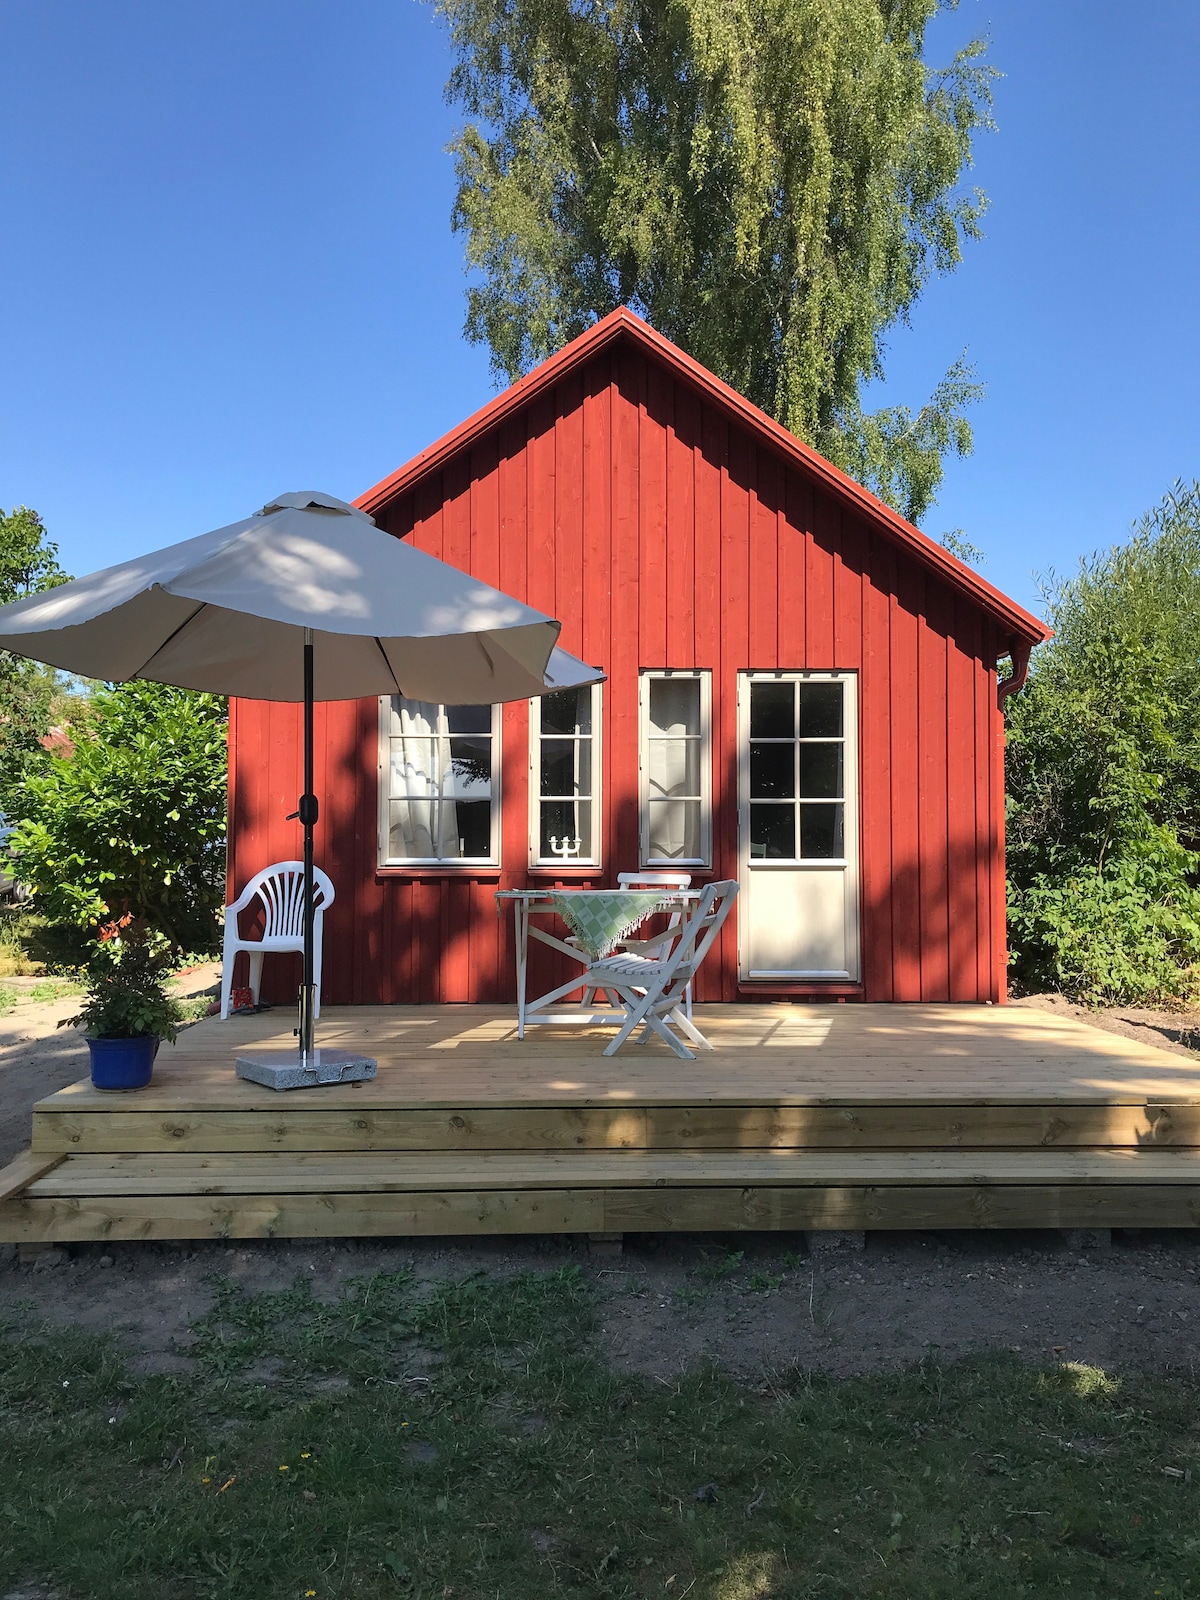 Lilla röda huset i Bästekille